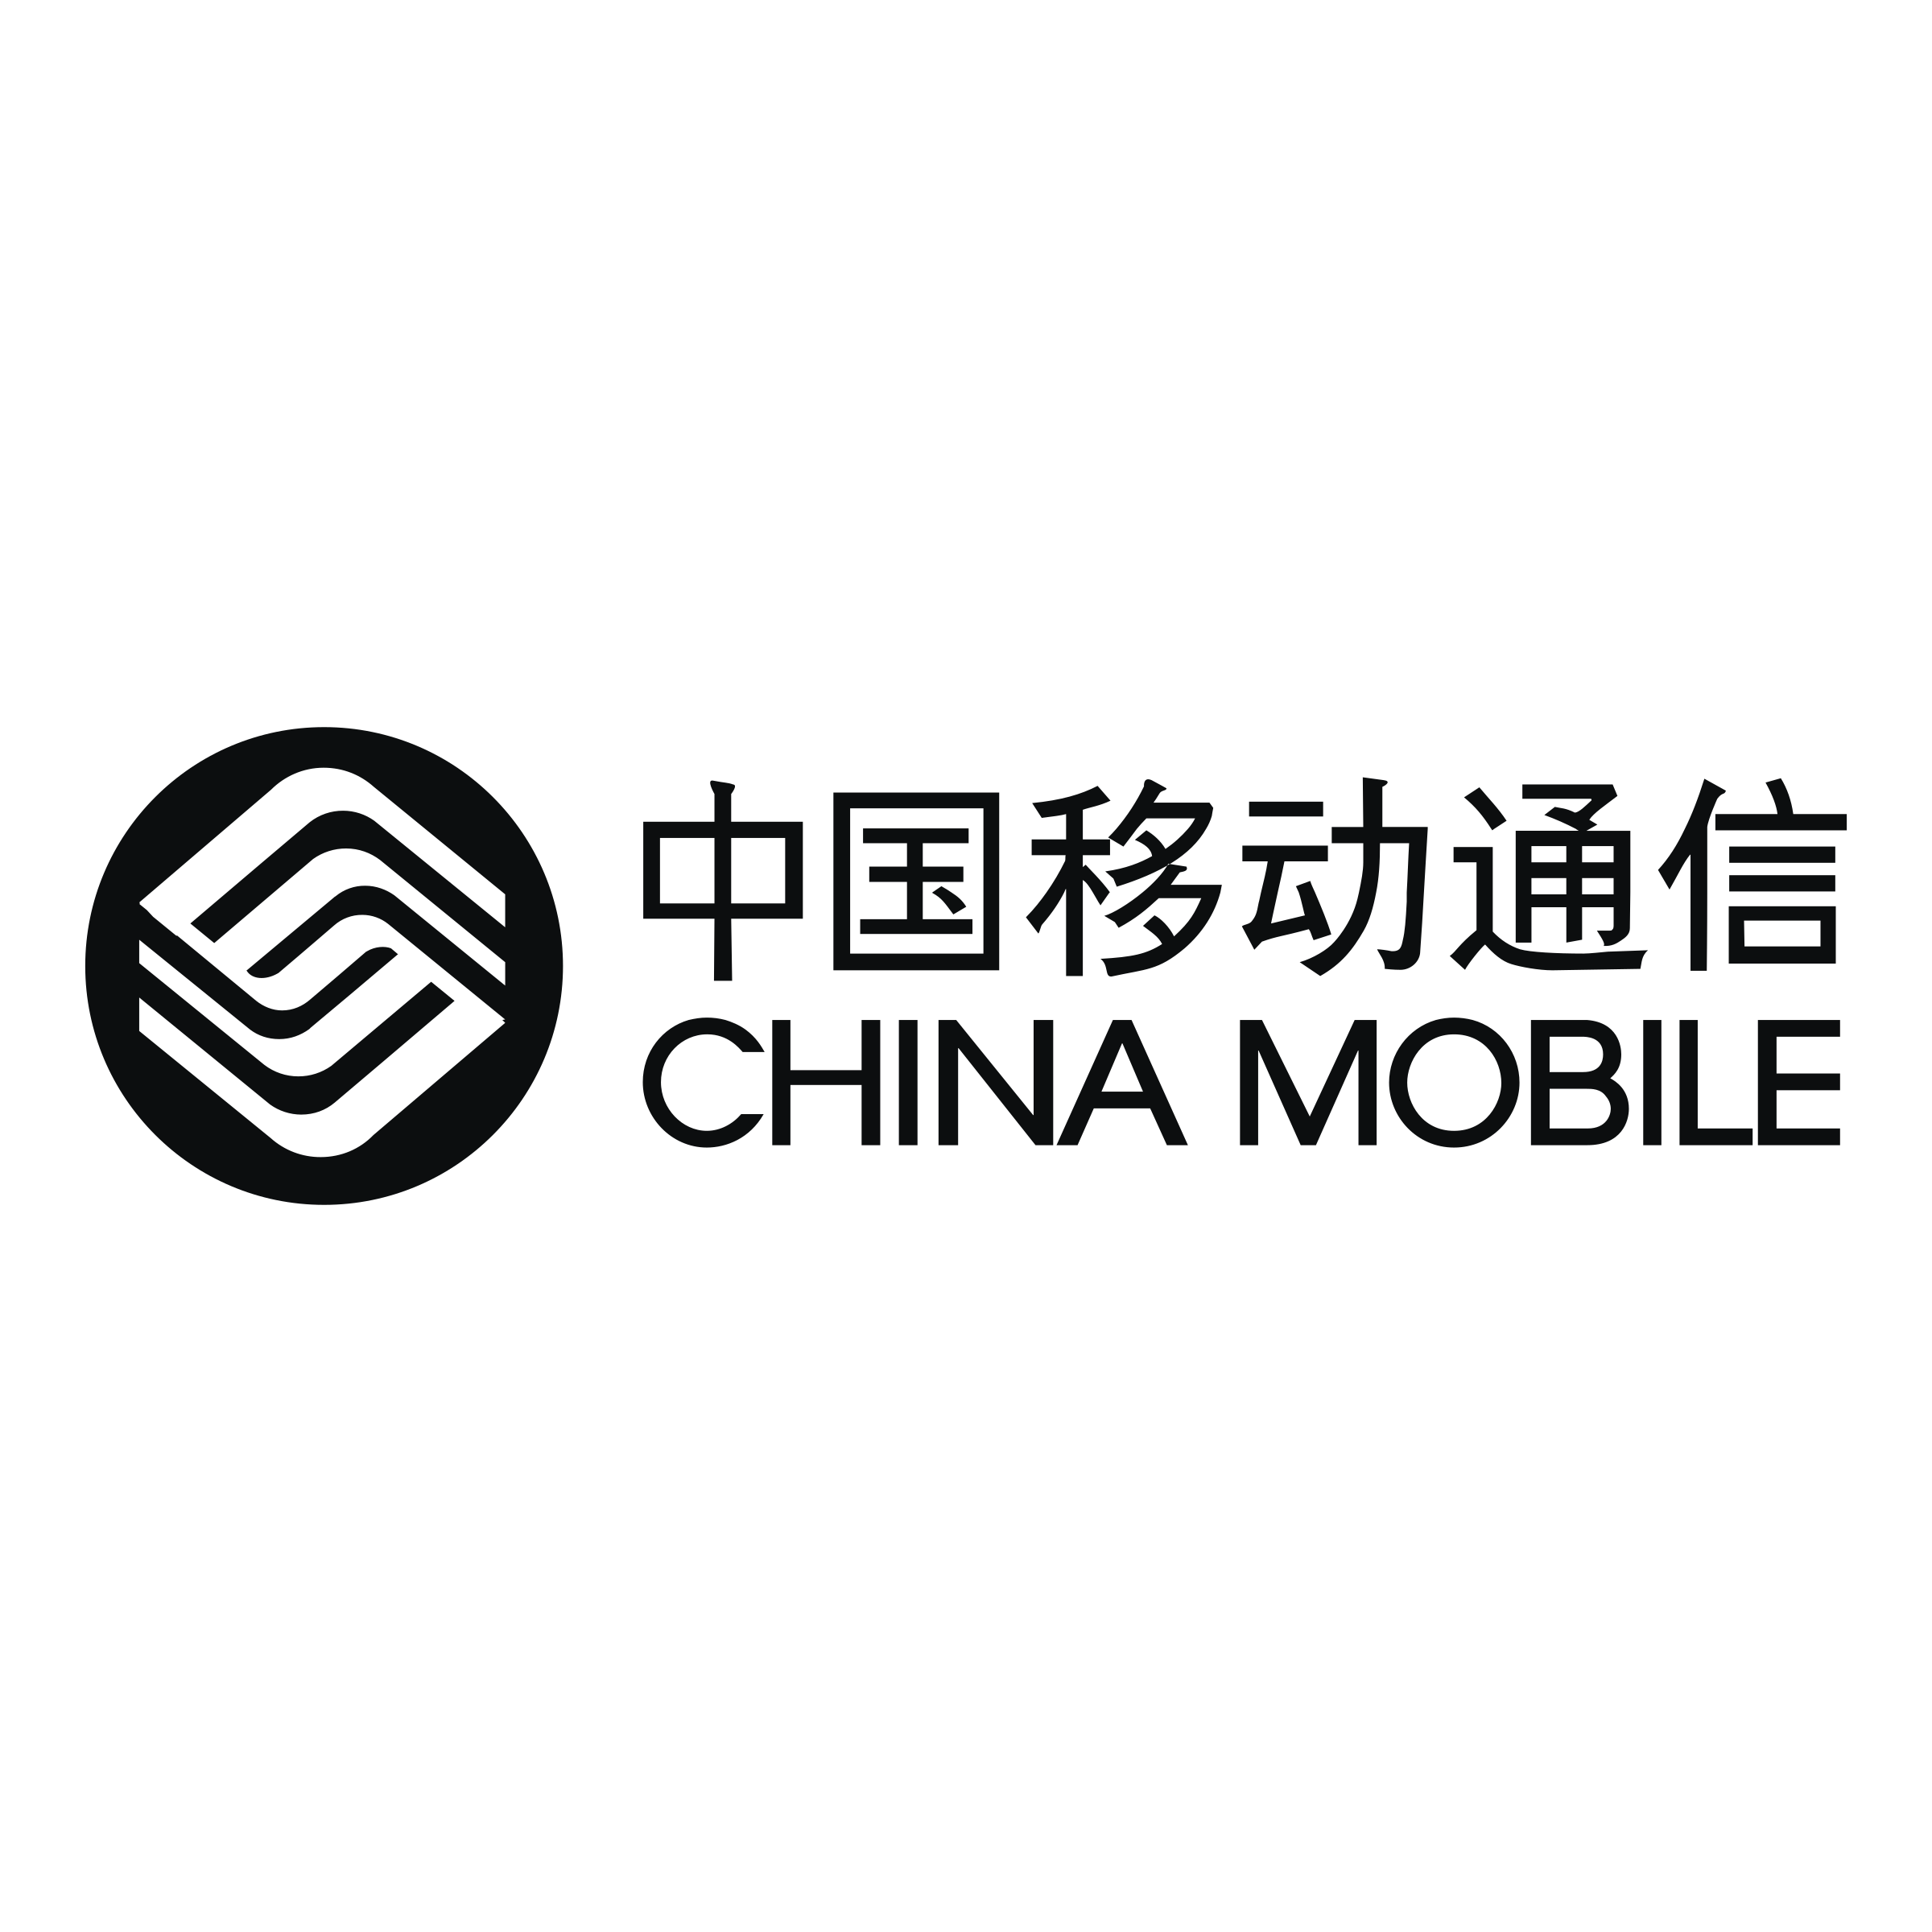 China Mobile Logo Download Free PNG